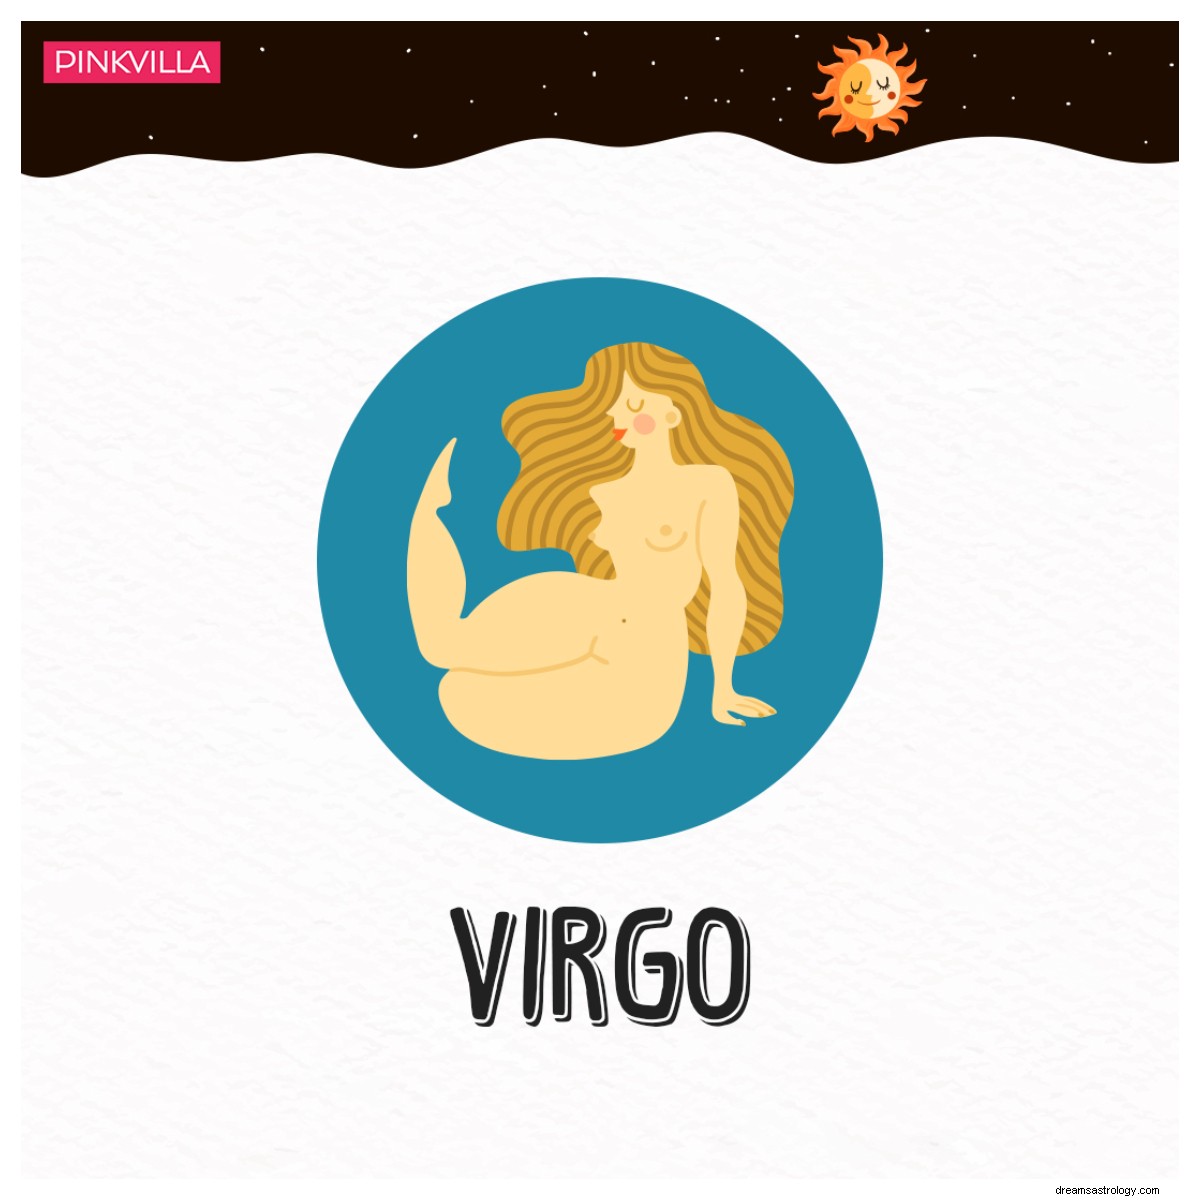 Mulheres de 4 signos do zodíaco que são ferozes e duronas 